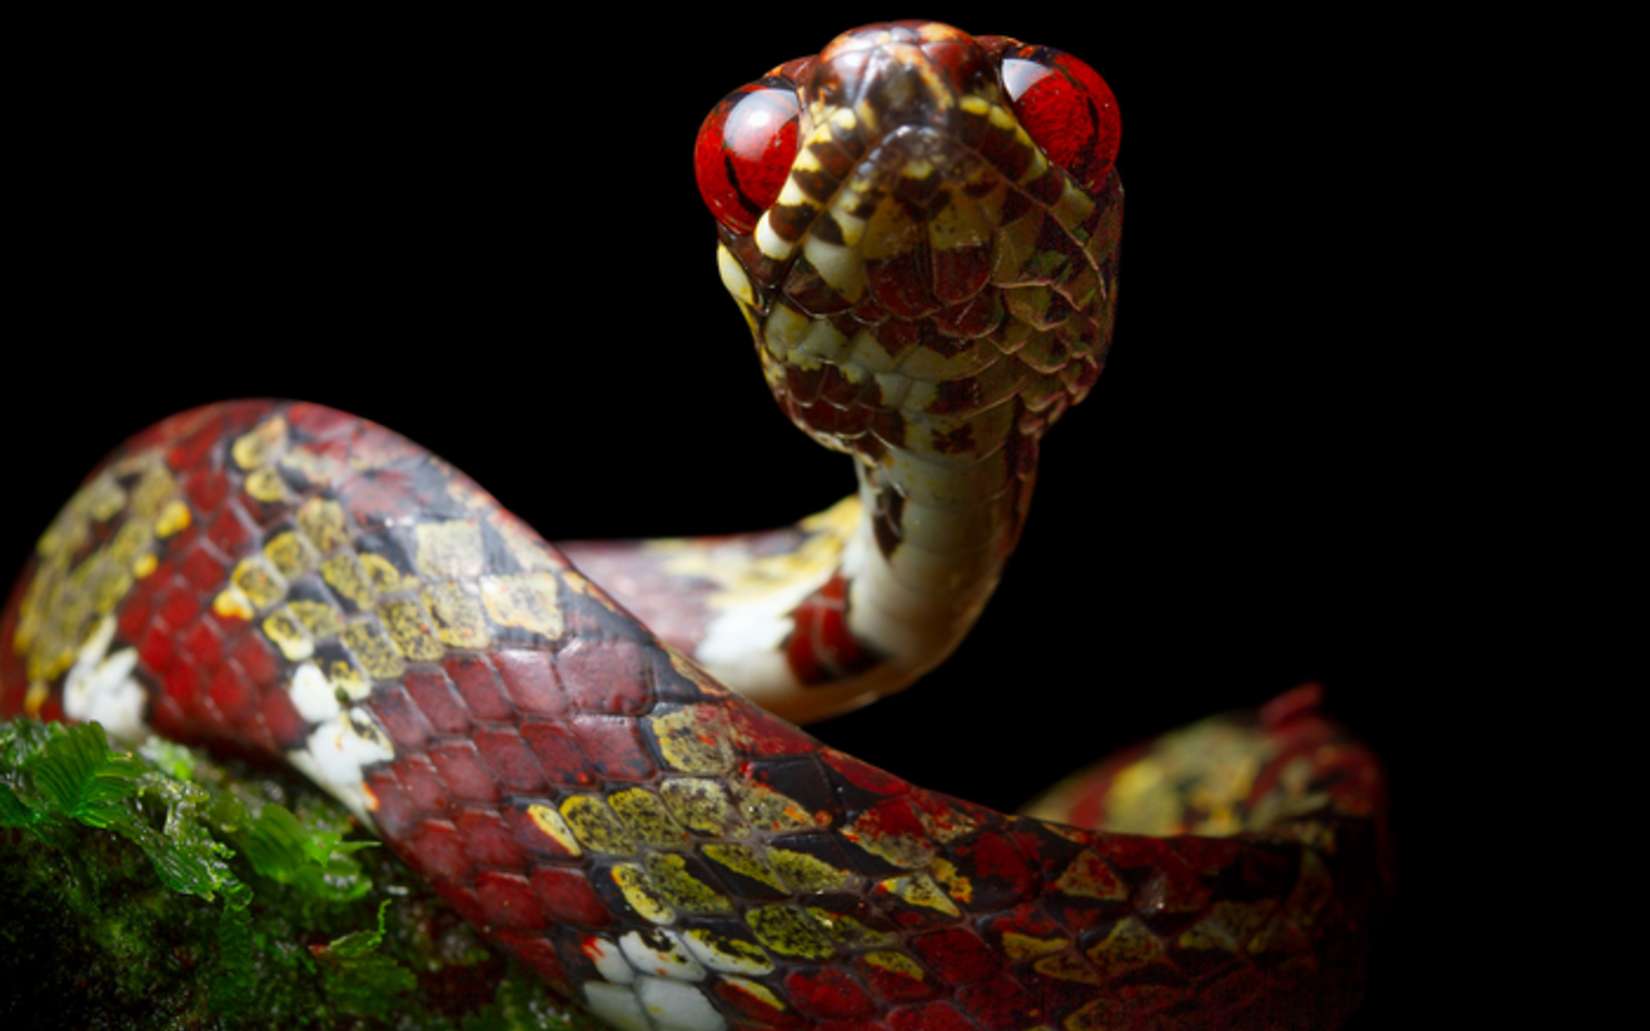 Un nouveau serpent nommé « Di Caprio »